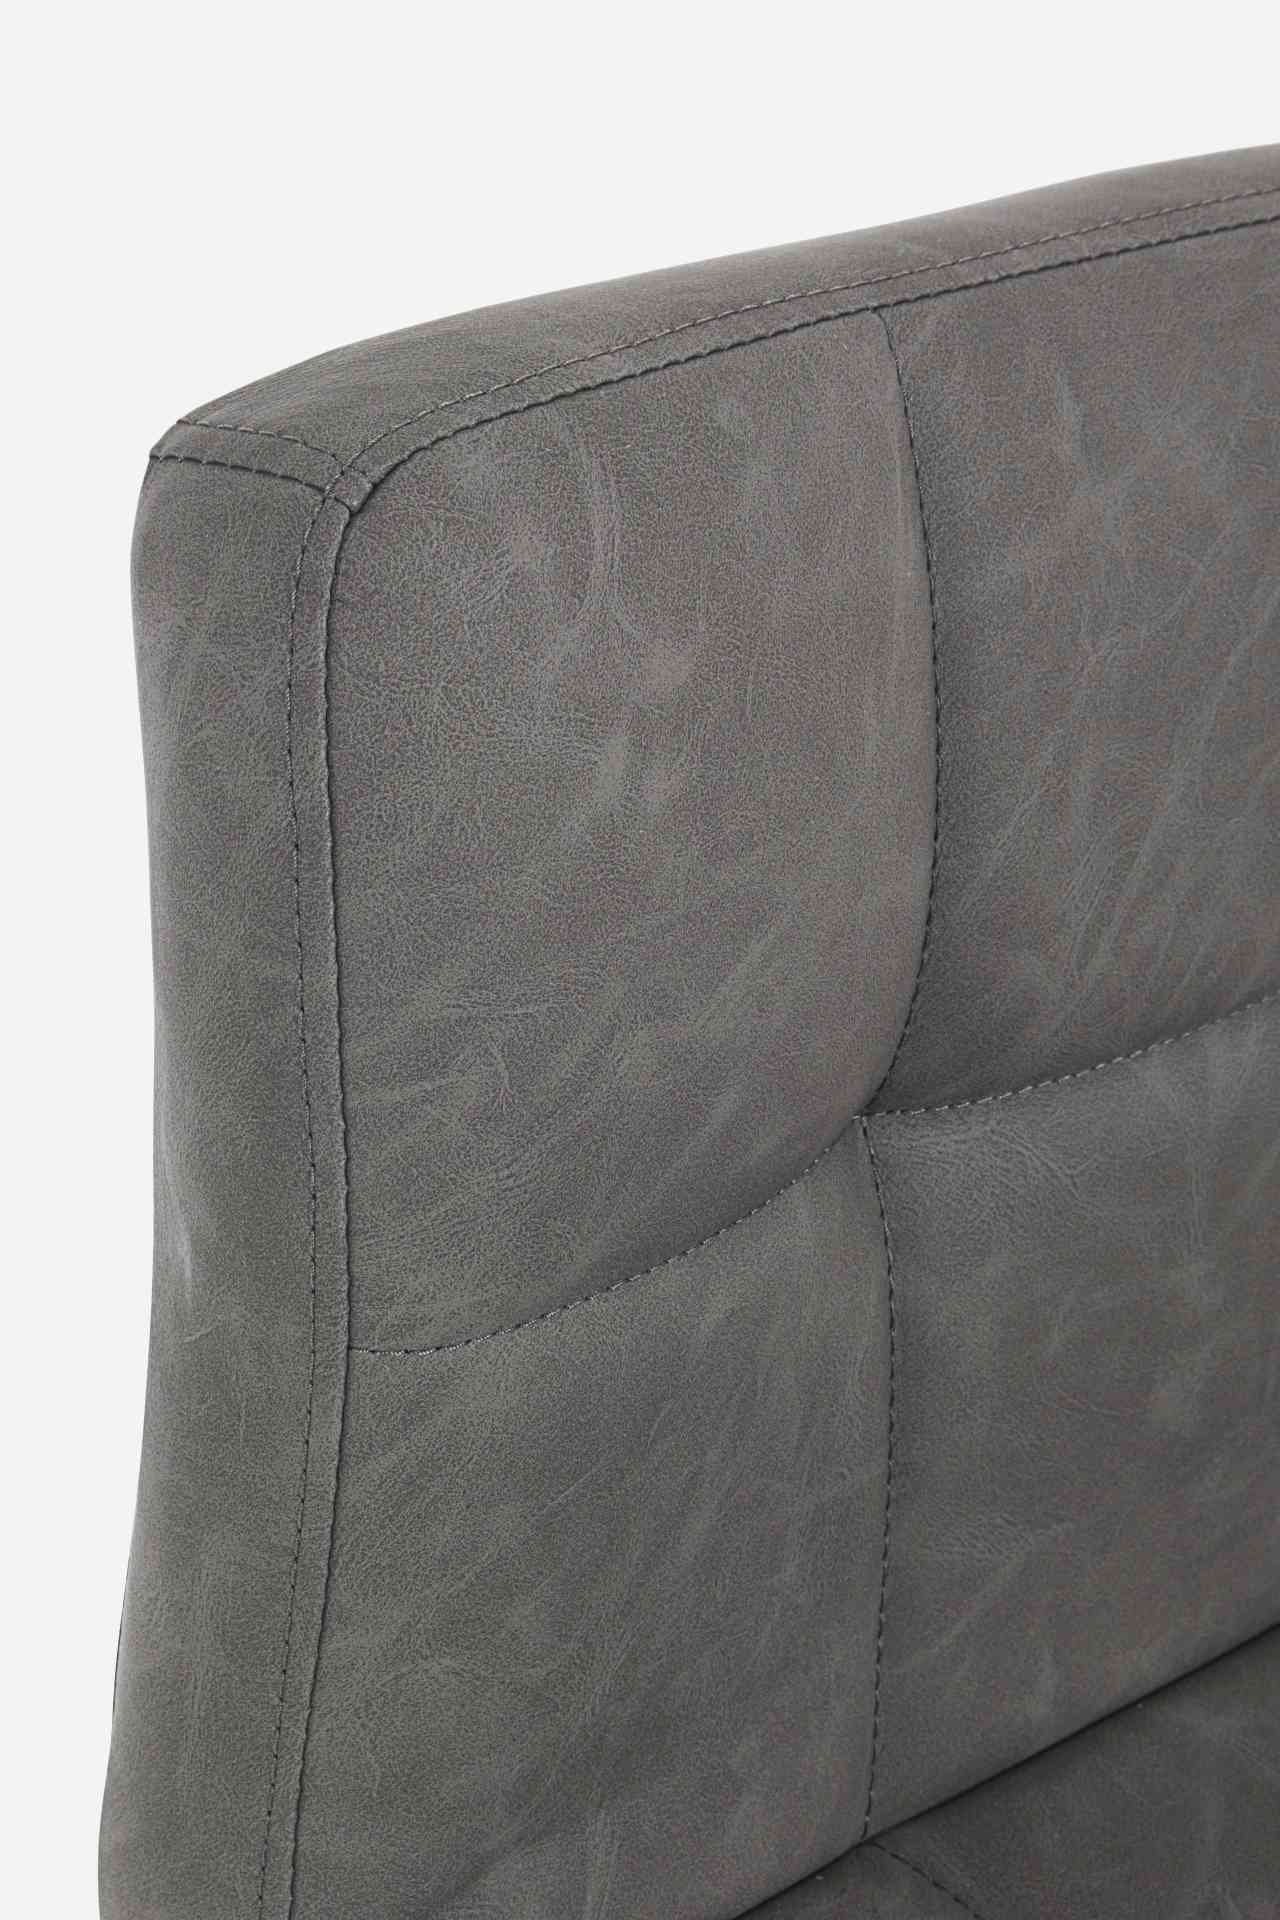 Der Barhocker Greyson überzeugt mit seinem klassischen Design. Gefertigt wurde er aus Kunstleder, welches einen dunkelgrauen Farbton besitzt. Das Gestell ist aus Metall und hat eine Anthrazit Farbe. Die Sitzhöhe des Hockers ist höhenverstellbar.